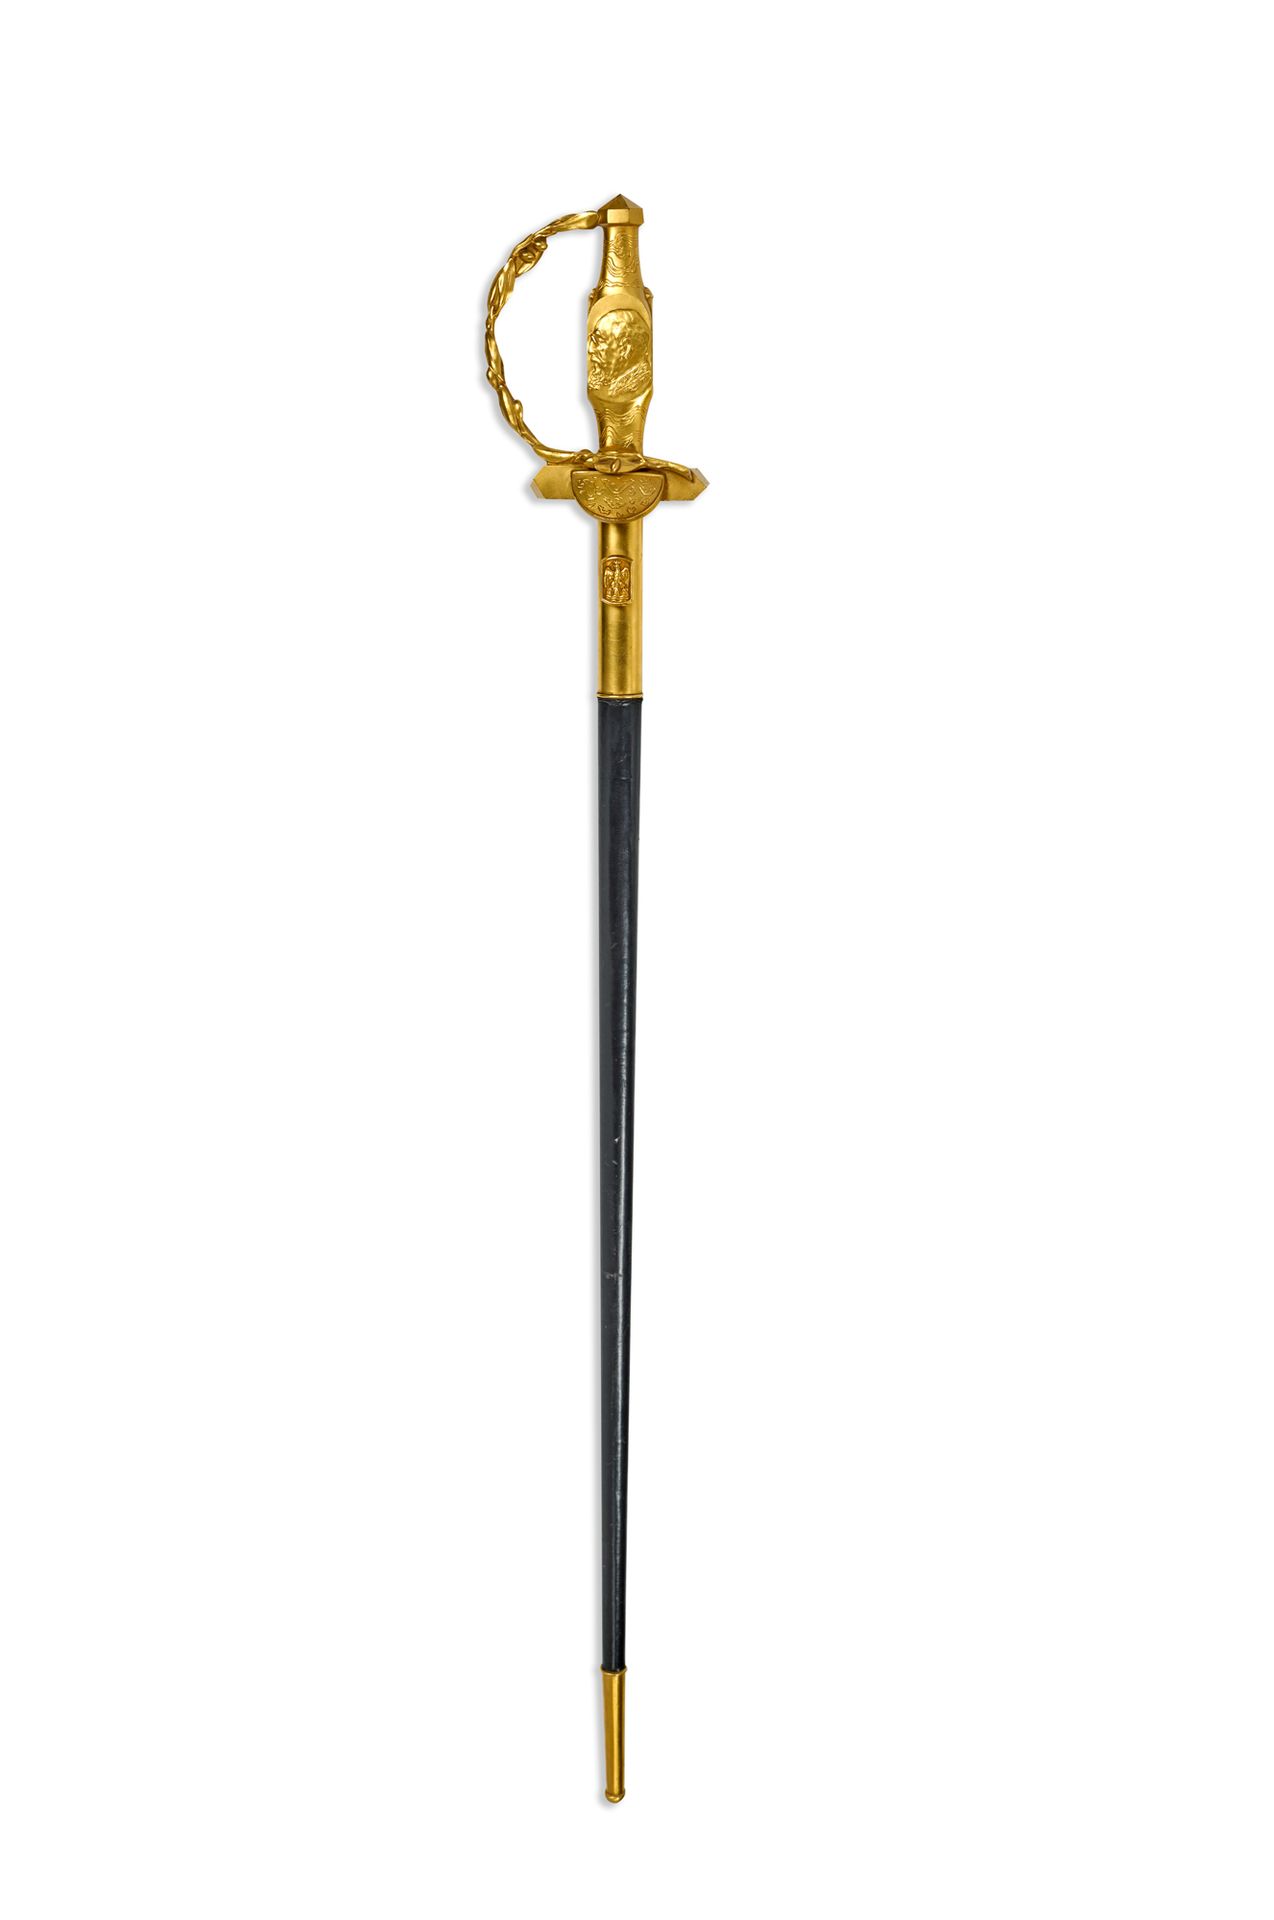 Académie des sciences 
Sword of Léon BERTRAND (Arville, 1869 - Paris, 1947), mem&hellip;